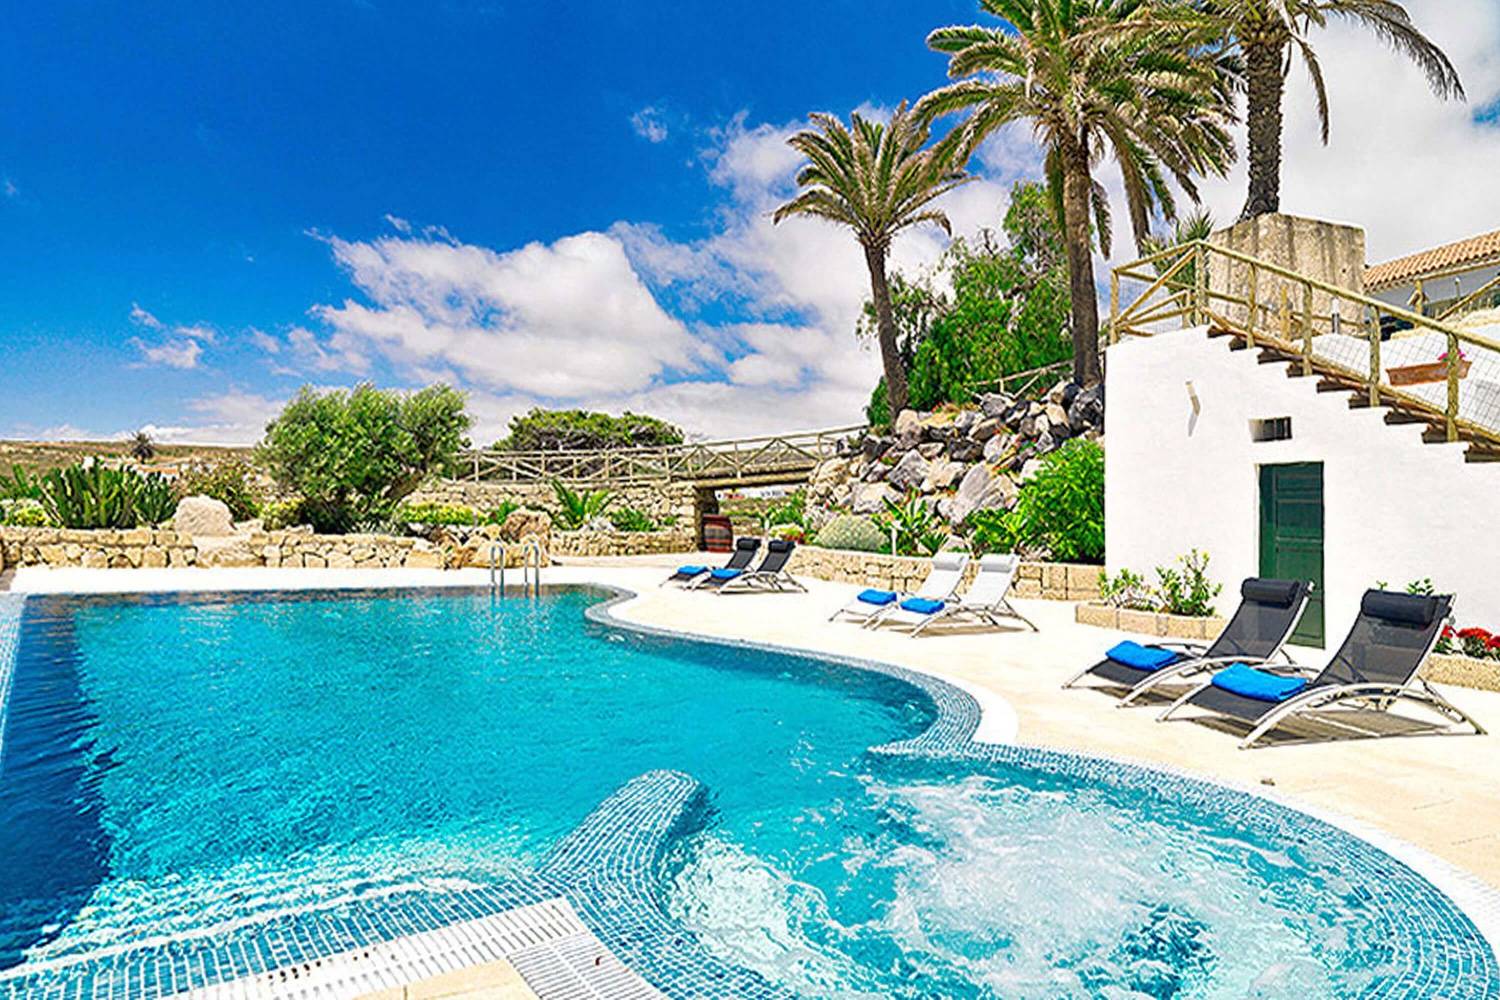 Rustiek vakantiehuis met gemeenschappelijk zwembad voor een ontspannen vakantie op het eiland Tenerife